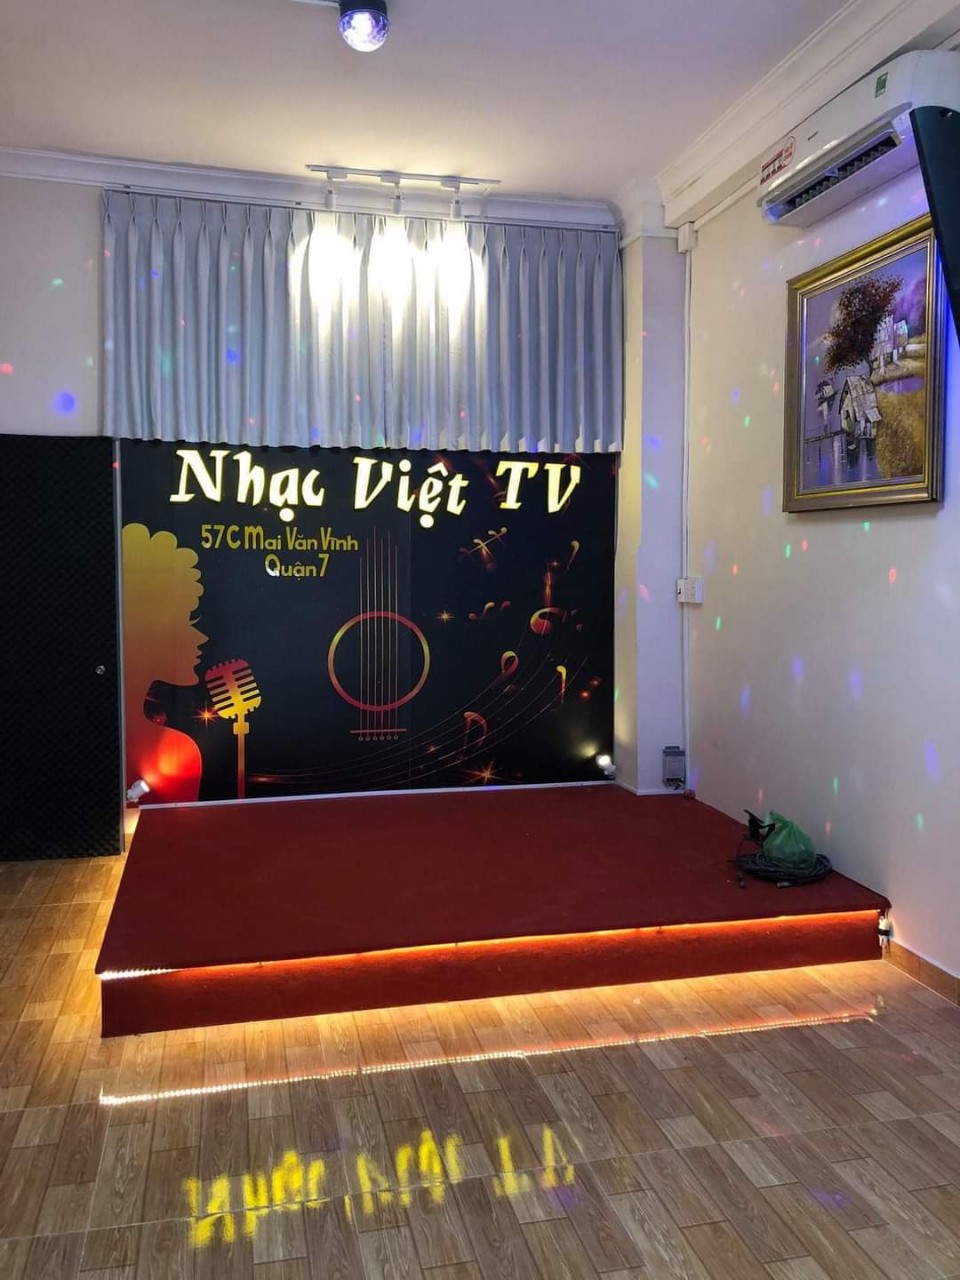 Sang quán Cà phê hát với nhau – Cà Phê Nhạc Việt TV đường Mai Văn Vĩnh Quận 7. Tel : 0939134907  – - Ảnh 3